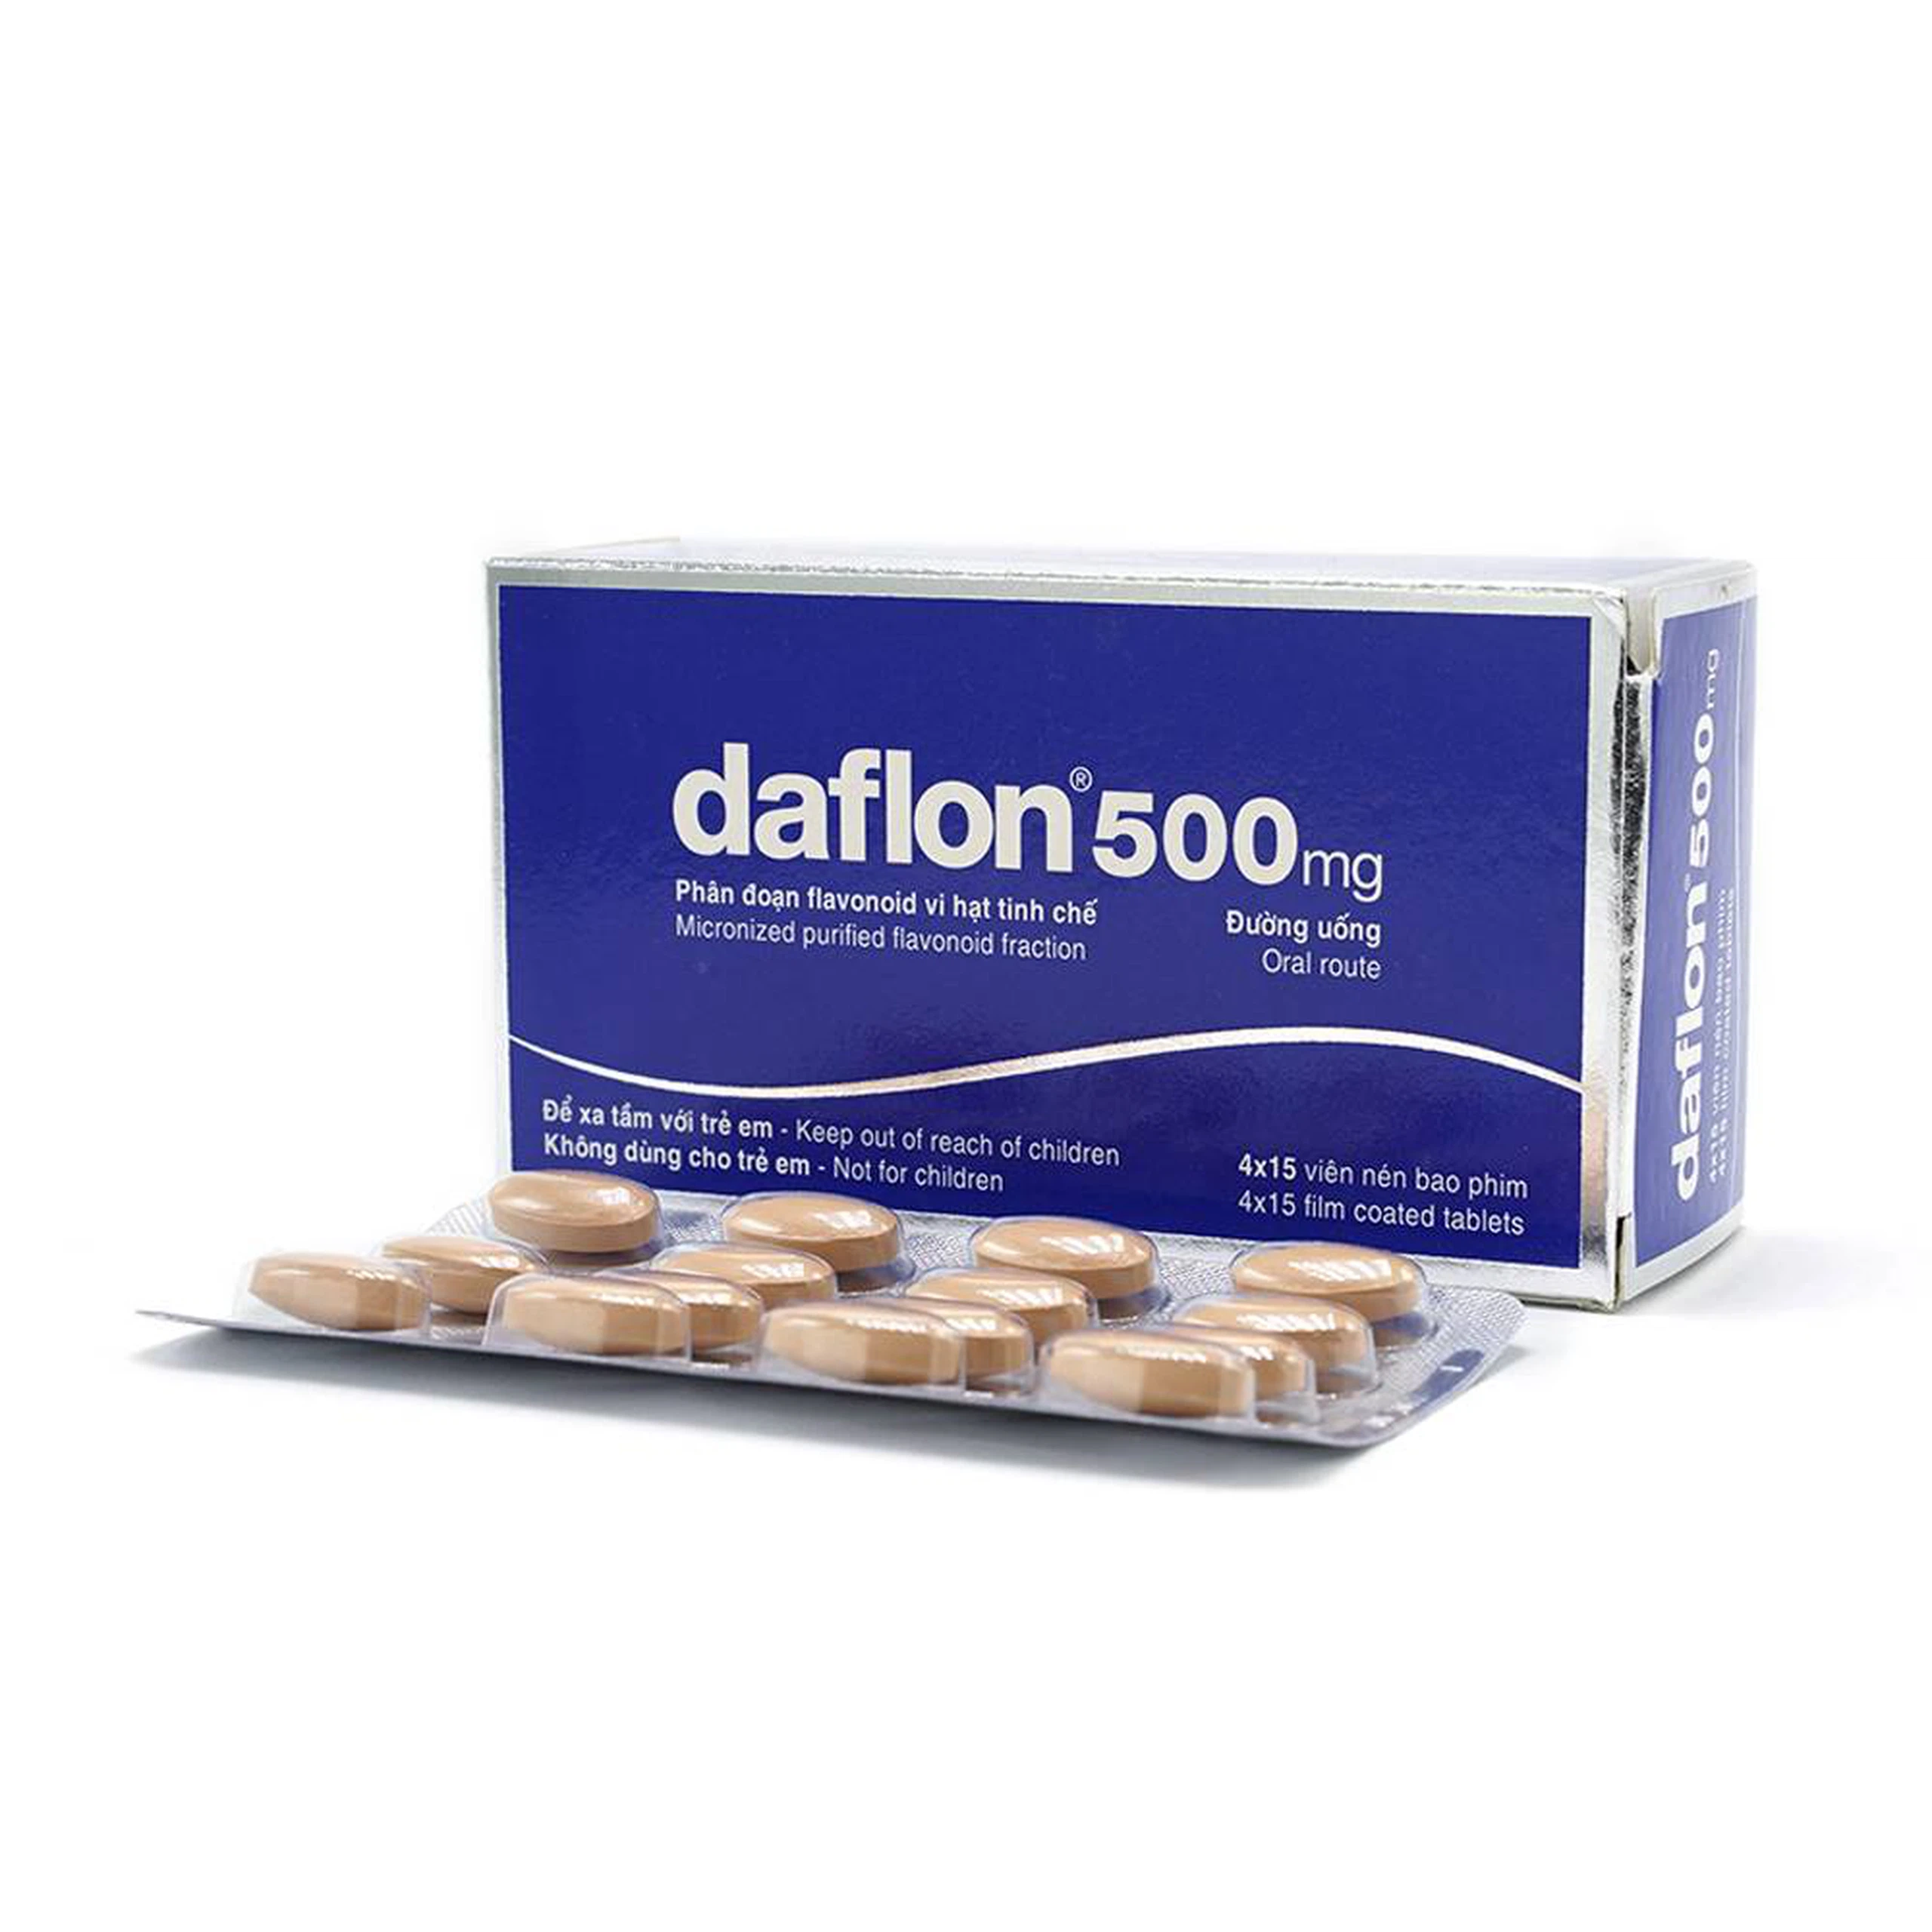 Thuốc Daflon 500mg Servier điều trị các triệu chứng liên quan đến suy giảm tĩnh mạch bạch huyết và trĩ cấp (60 viên)